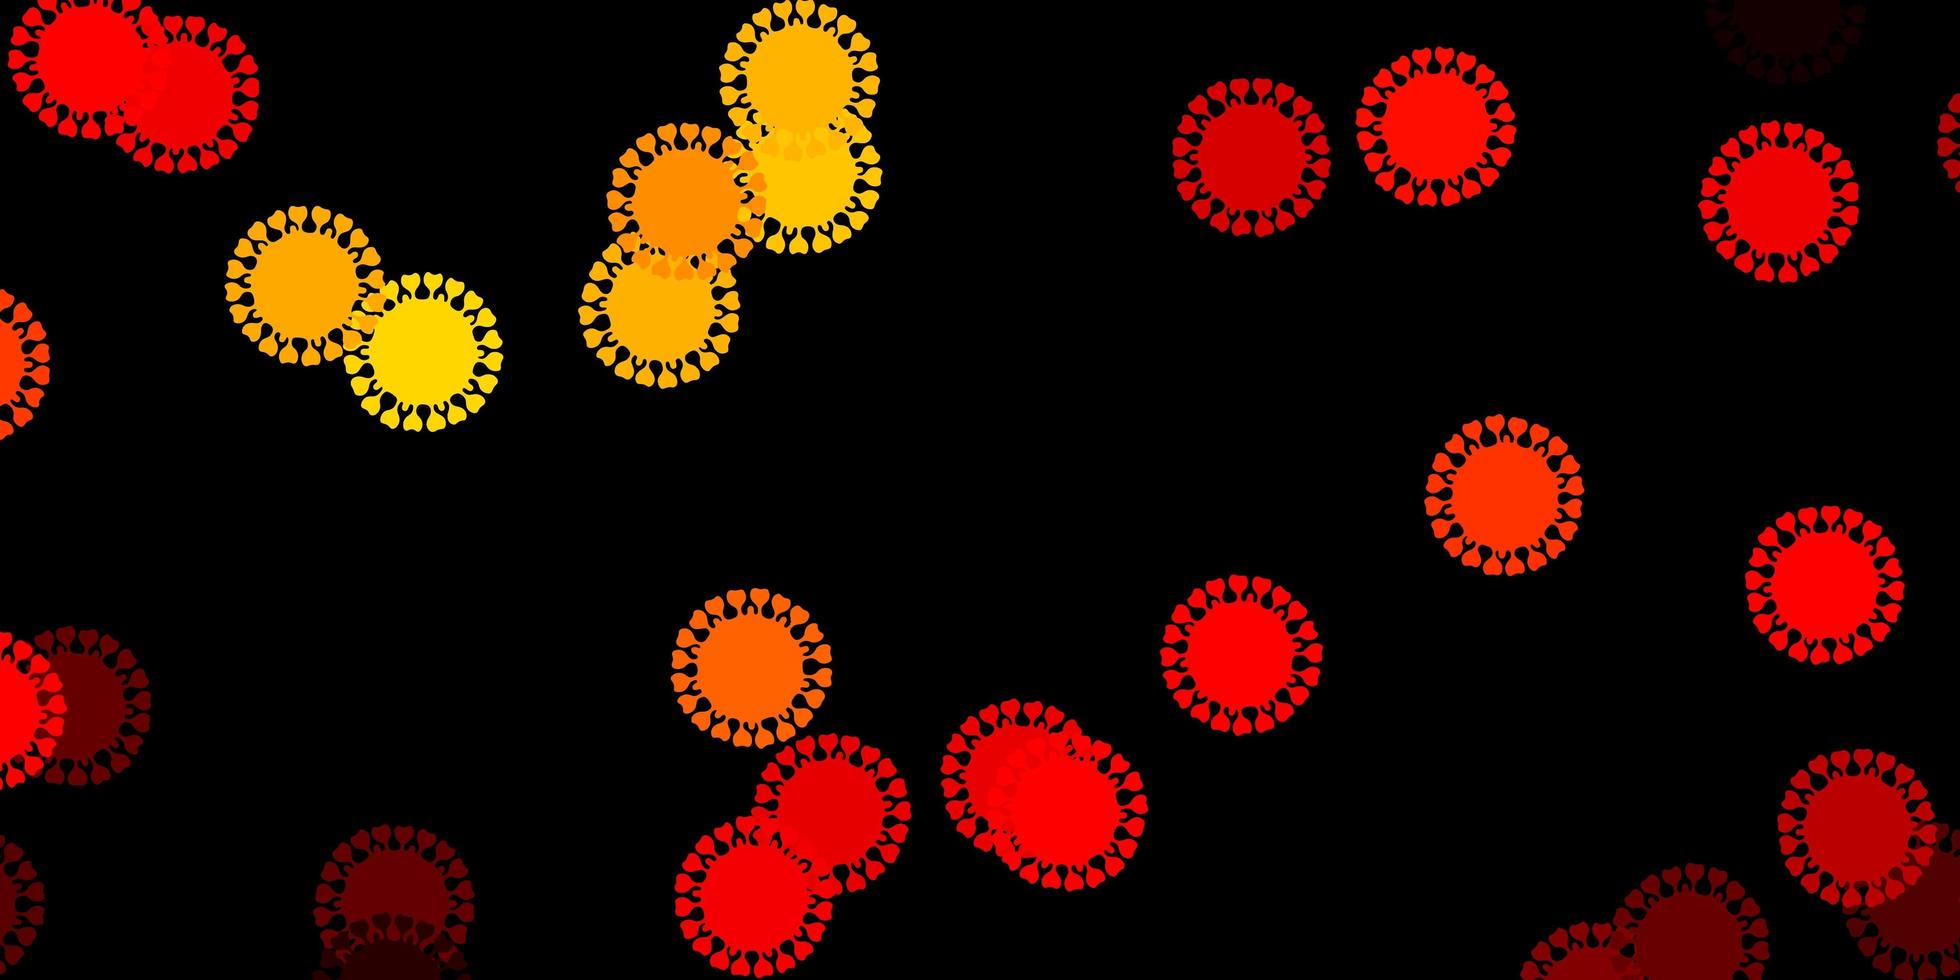 mörkrött gult vektormönster med coronaviruselement vektor